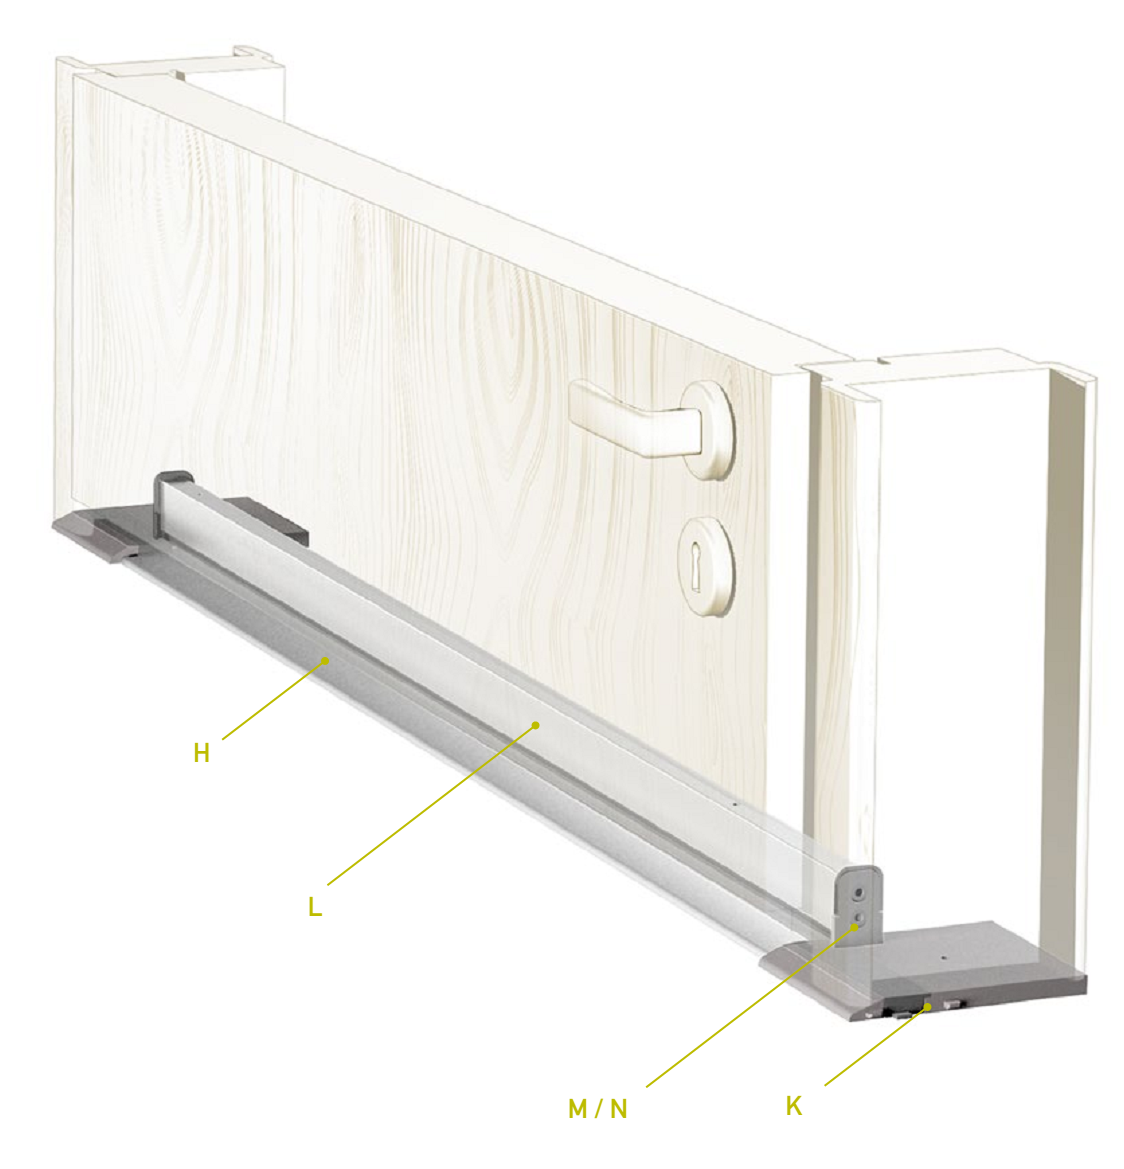 CCE -  Soglia TERMO ULISSE WOOD per porta d'ingresso in legno con taglio termico - col. ARGENTO - l. 71 - h. 9 - l. max 1130